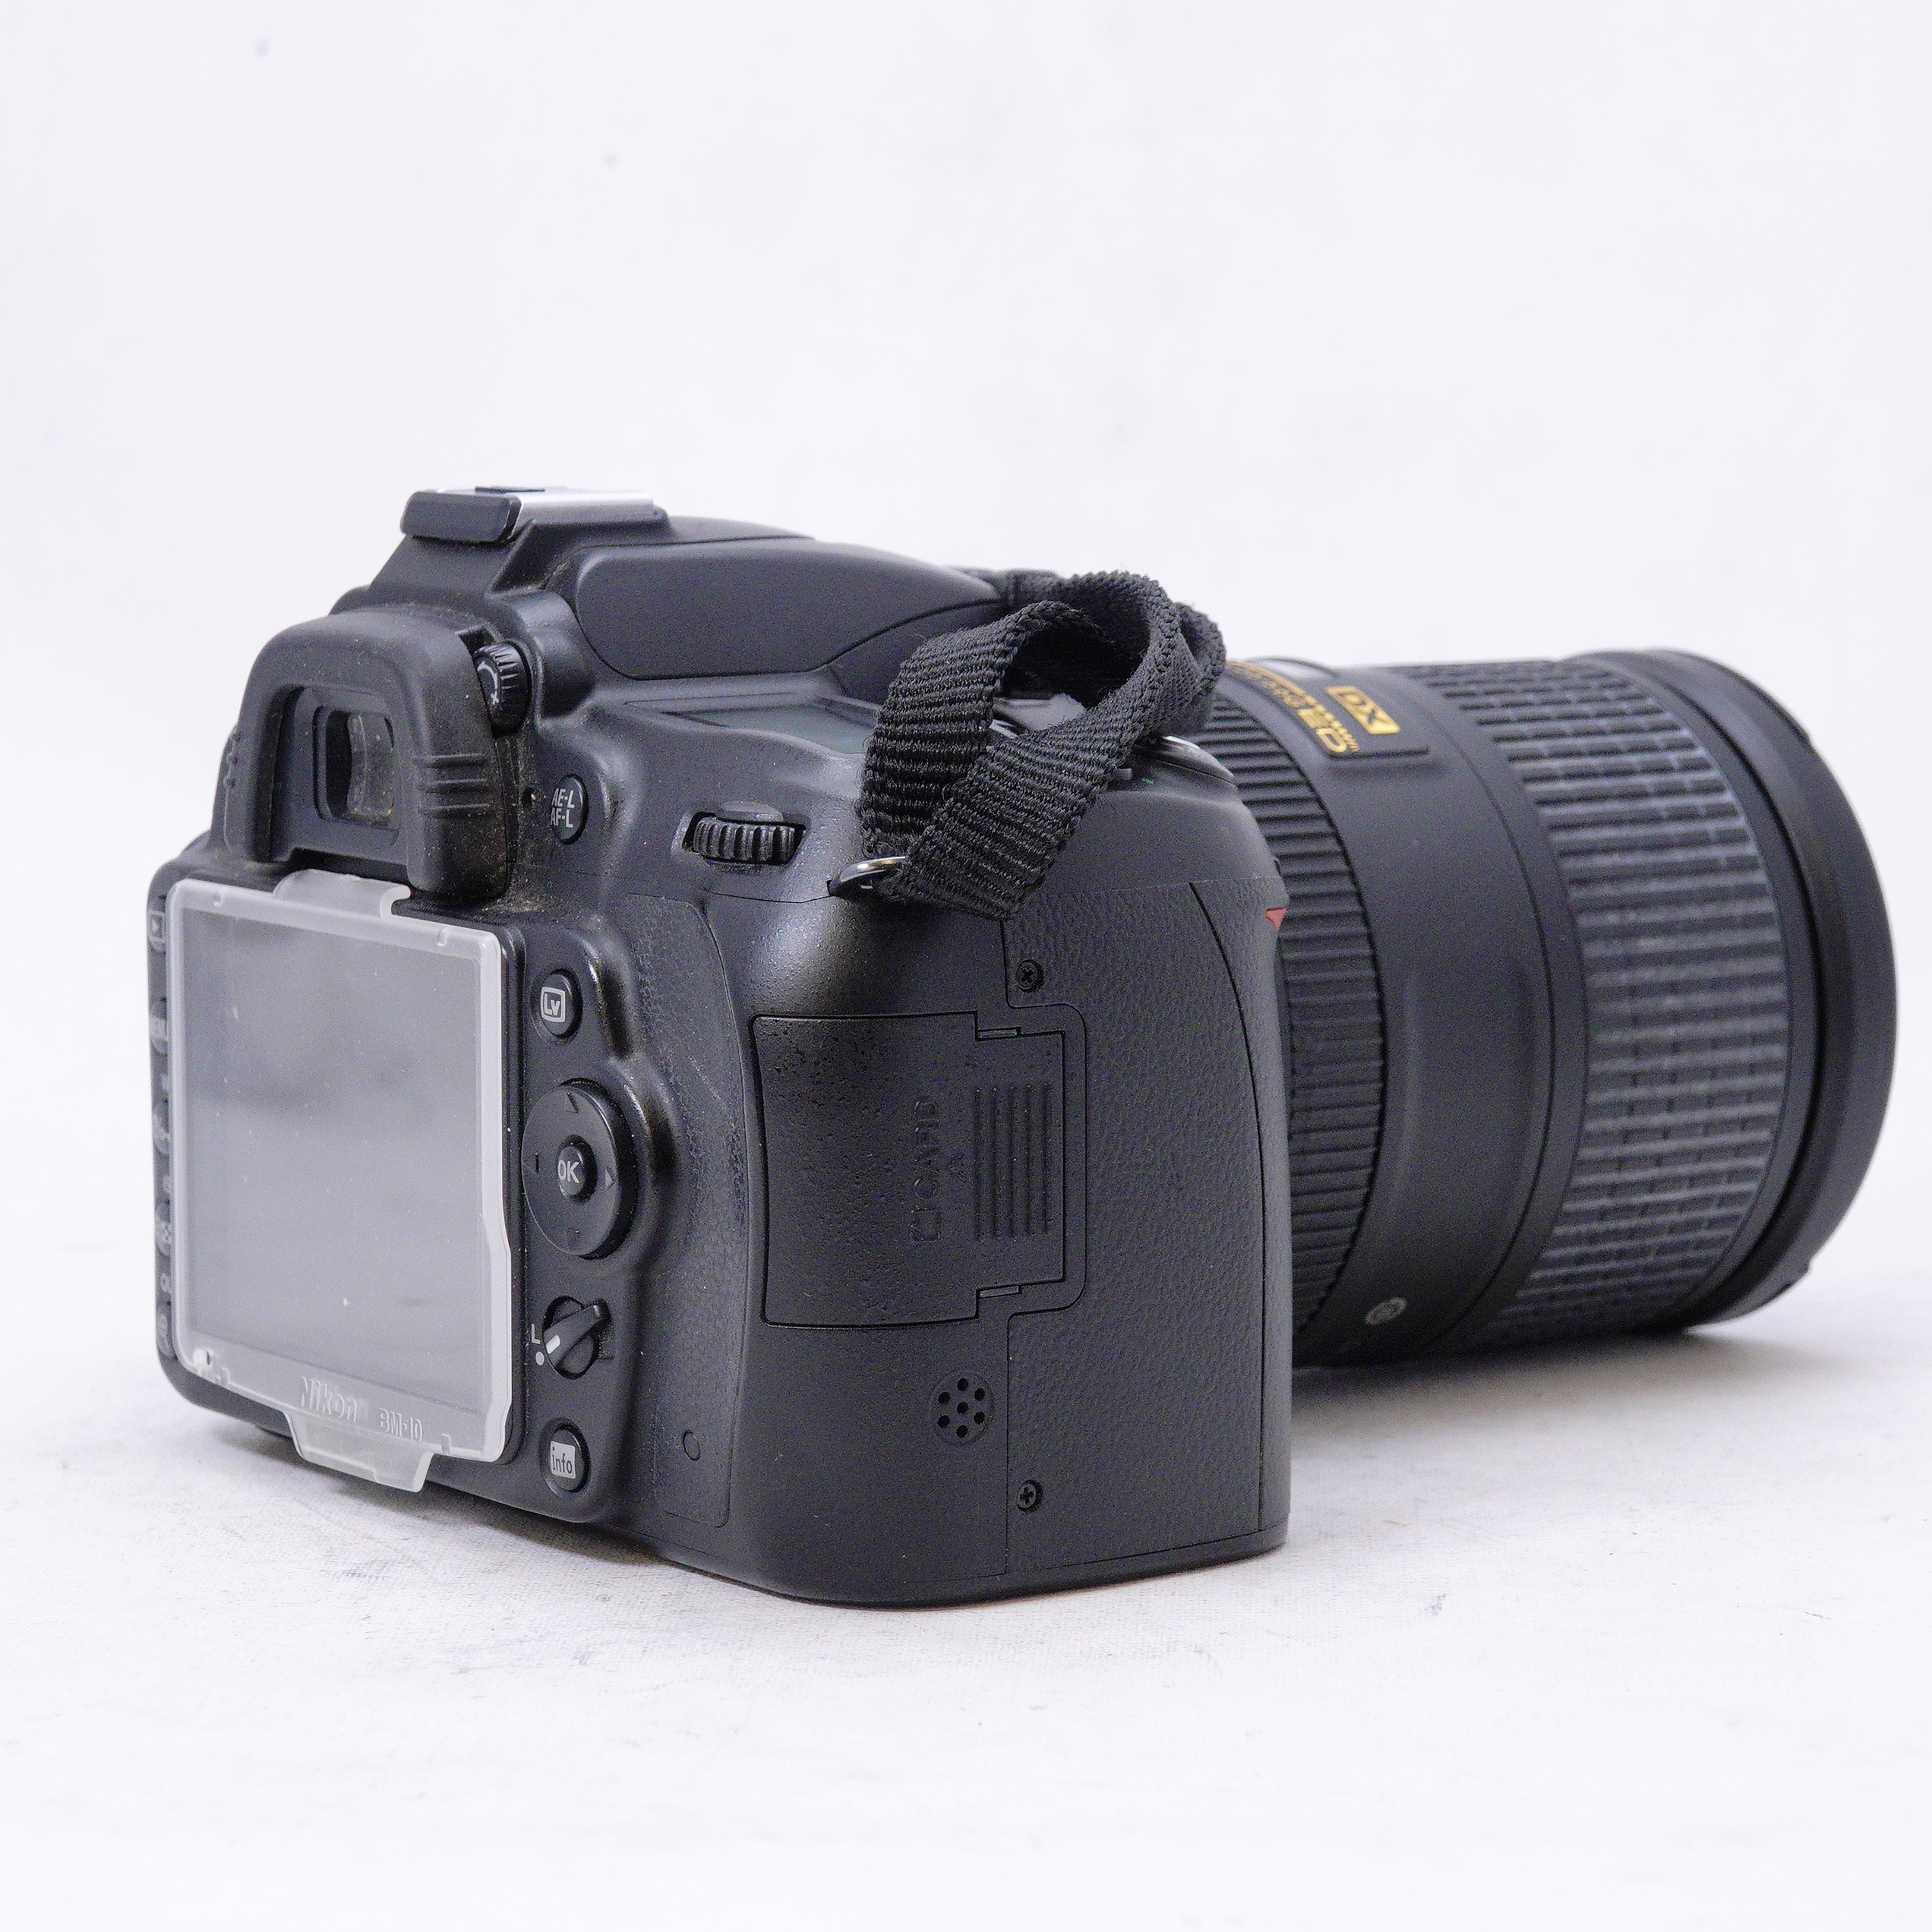 Nikon D90 con lente 18-300mm DX f3.5-5.6 G ED y extras - Usado